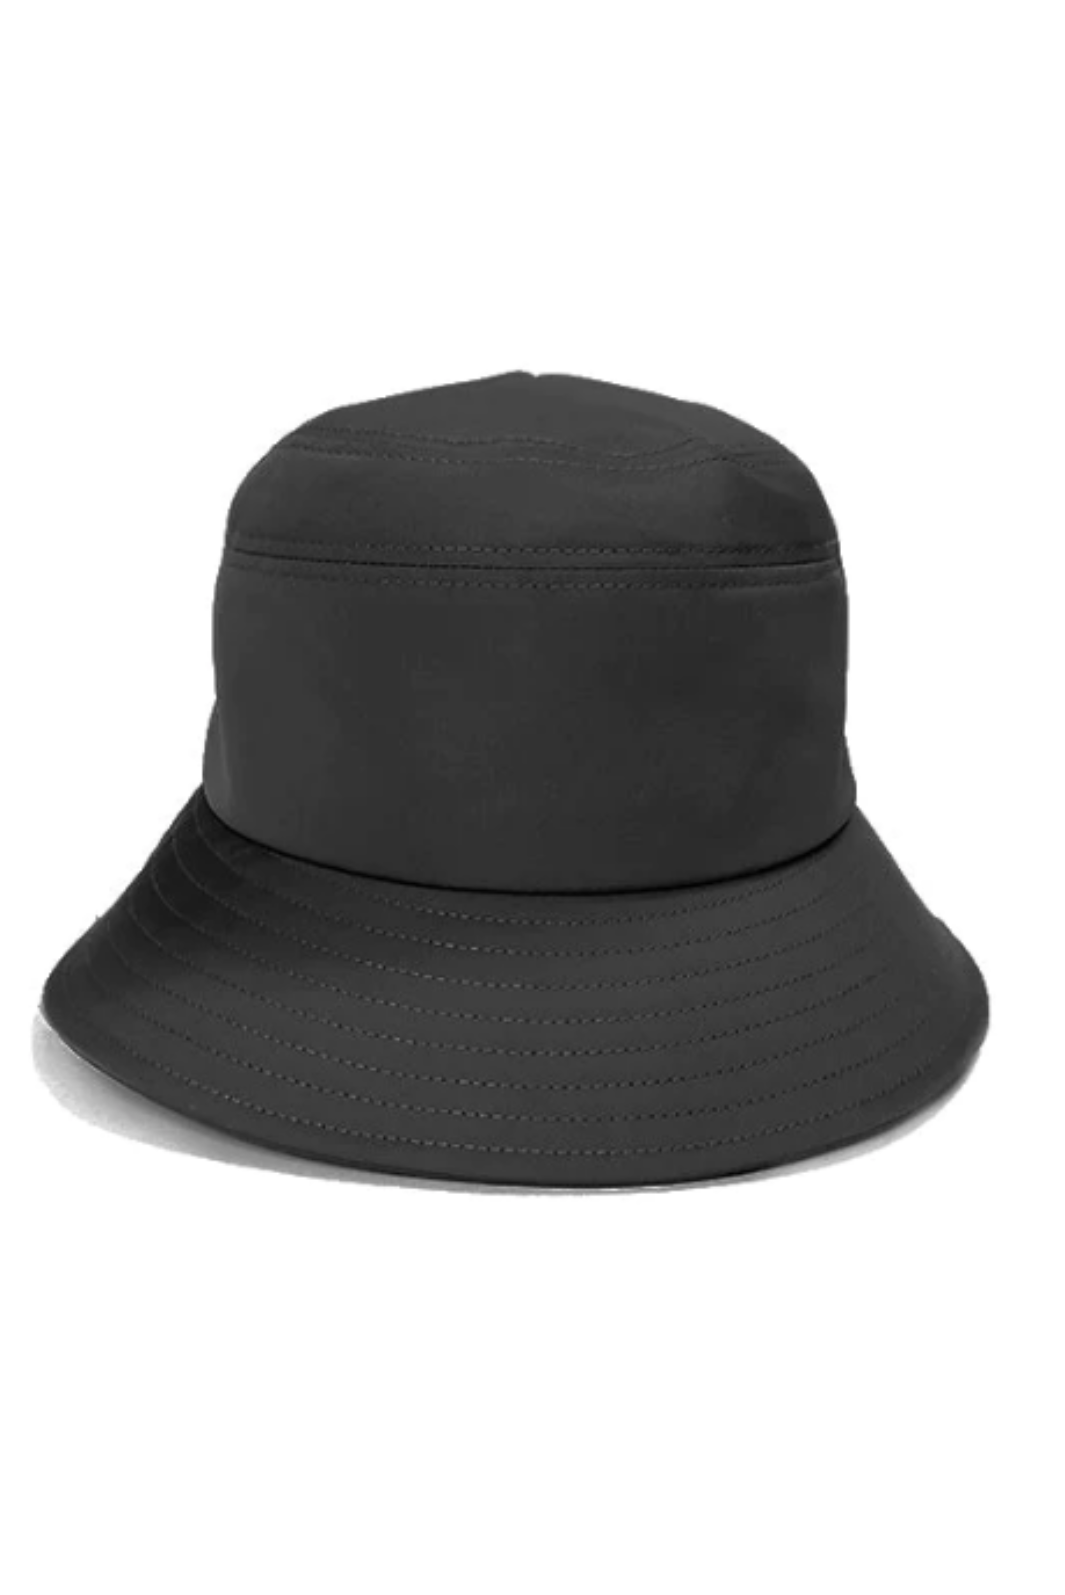 Chapeau Clelia de Canadian Hat